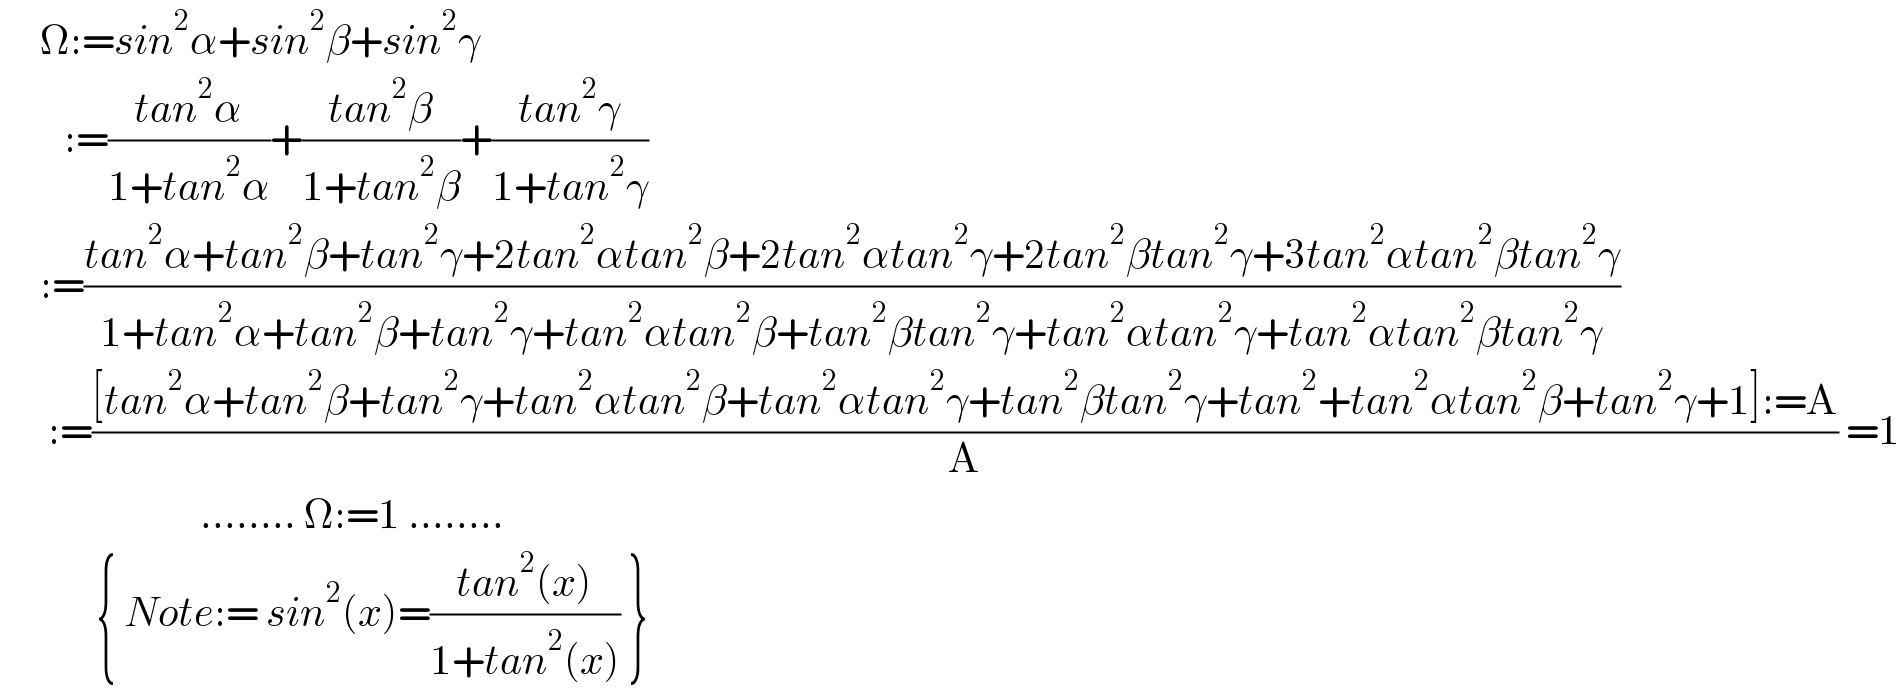      Ω:=sin^2 α+sin^2 β+sin^2 γ          :=((tan^2 α)/(1+tan^2 α))+((tan^2 β)/(1+tan^2 β))+((tan^2 γ)/(1+tan^2 γ))       :=((tan^2 α+tan^2 β+tan^2 γ+2tan^2 αtan^2 β+2tan^2 αtan^2 γ+2tan^2 βtan^2 γ+3tan^2 αtan^2 βtan^2 γ)/(1+tan^2 α+tan^2 β+tan^2 γ+tan^2 αtan^2 β+tan^2 βtan^2 γ+tan^2 αtan^2 γ+tan^2 αtan^2 βtan^2 γ))        :=(([tan^2 α+tan^2 β+tan^2 γ+tan^2 αtan^2 β+tan^2 αtan^2 γ+tan^2 βtan^2 γ+tan^2 +tan^2 αtan^2 β+tan^2 γ+1]:=A)/A) =1                           ........ Ω:=1 ........              { Note:= sin^2 (x)=((tan^2 (x))/(1+tan^2 (x))) }  